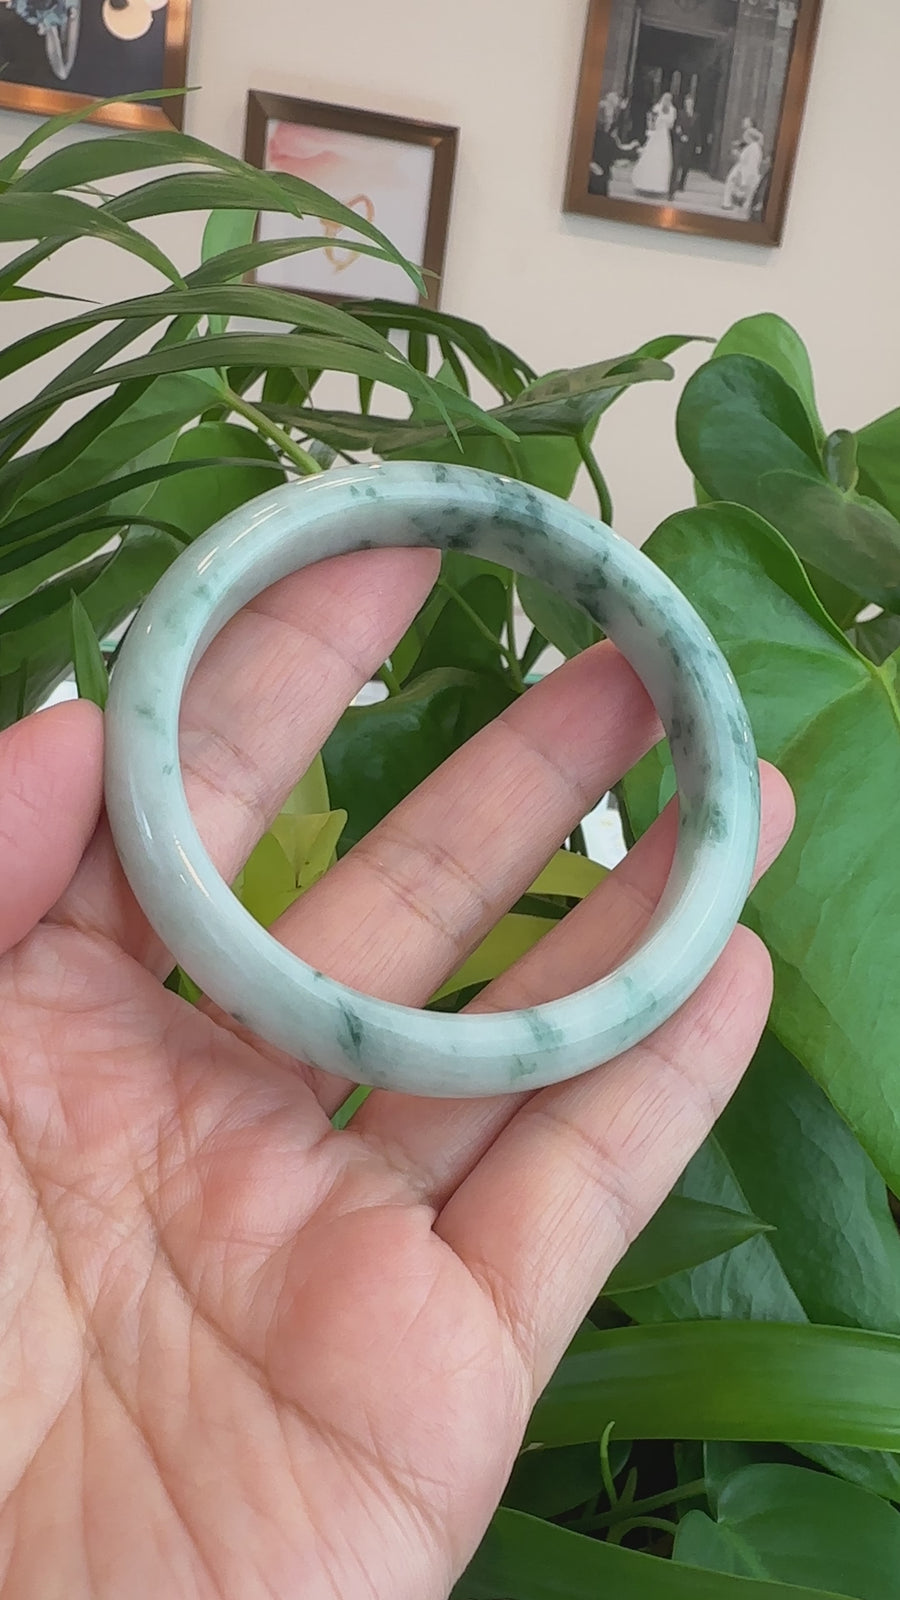 Natural Burmese Blue-green Jadeite Jade Bangle Bracelet (62.17mm)#T020